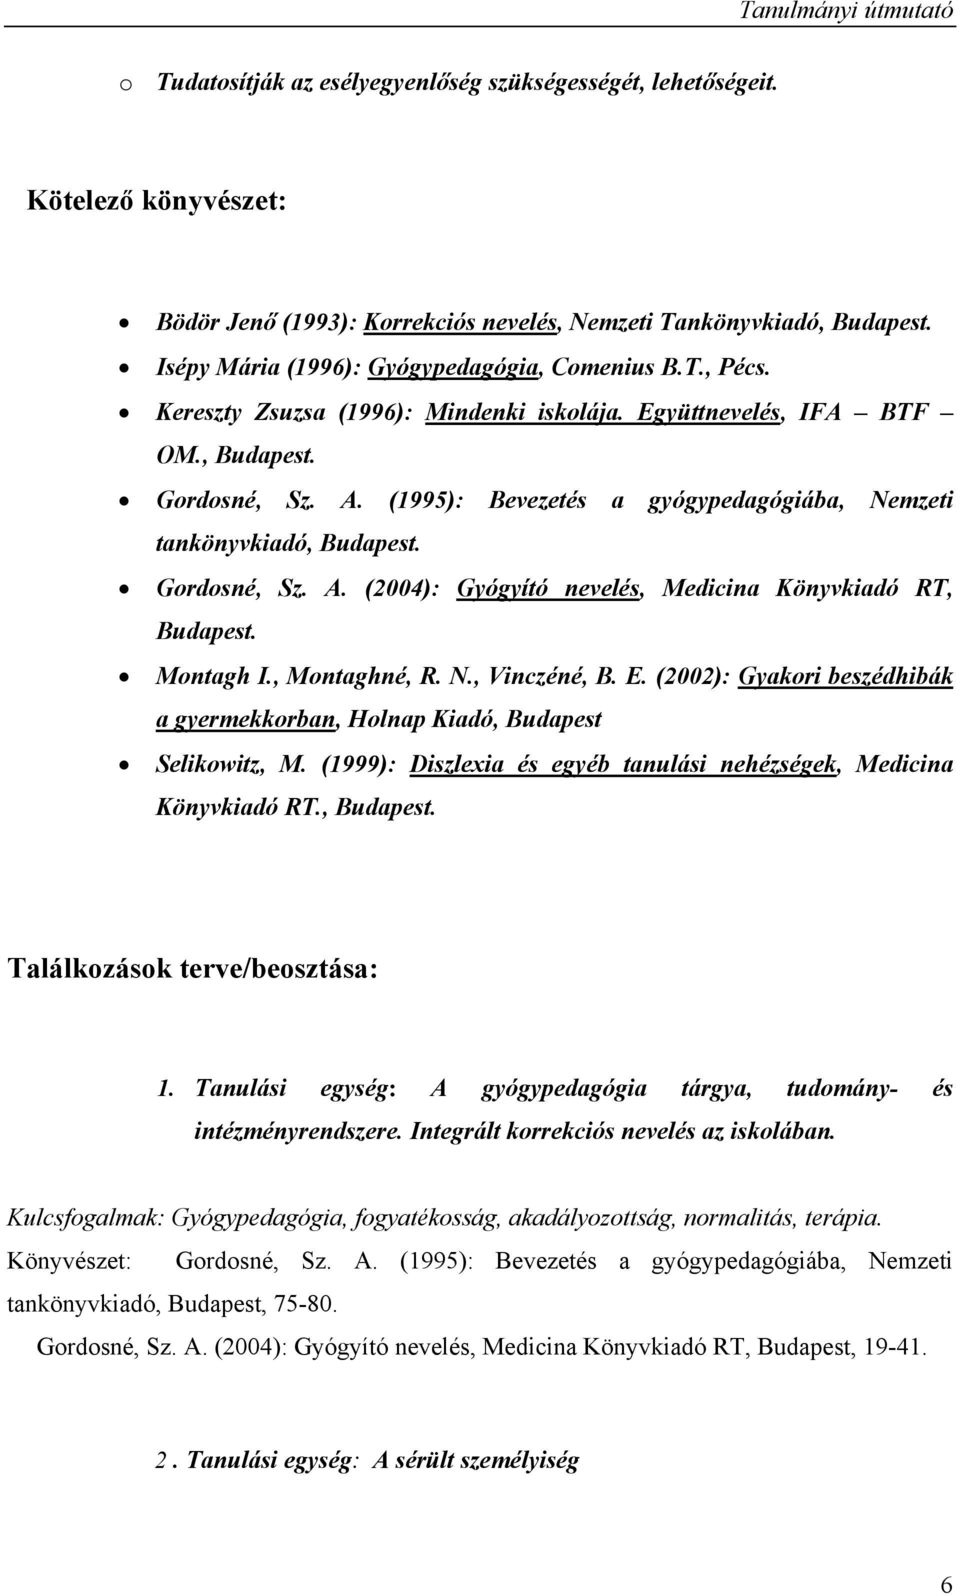 (1995): Bevezetés a gyógypedagógiába, Nemzeti tankönyvkiadó, Budapest. Gordosné, Sz. A. (2004): Gyógyító nevelés, Medicina Könyvkiadó RT, Budapest. Montagh I., Montaghné, R. N., Vinczéné, B. E.